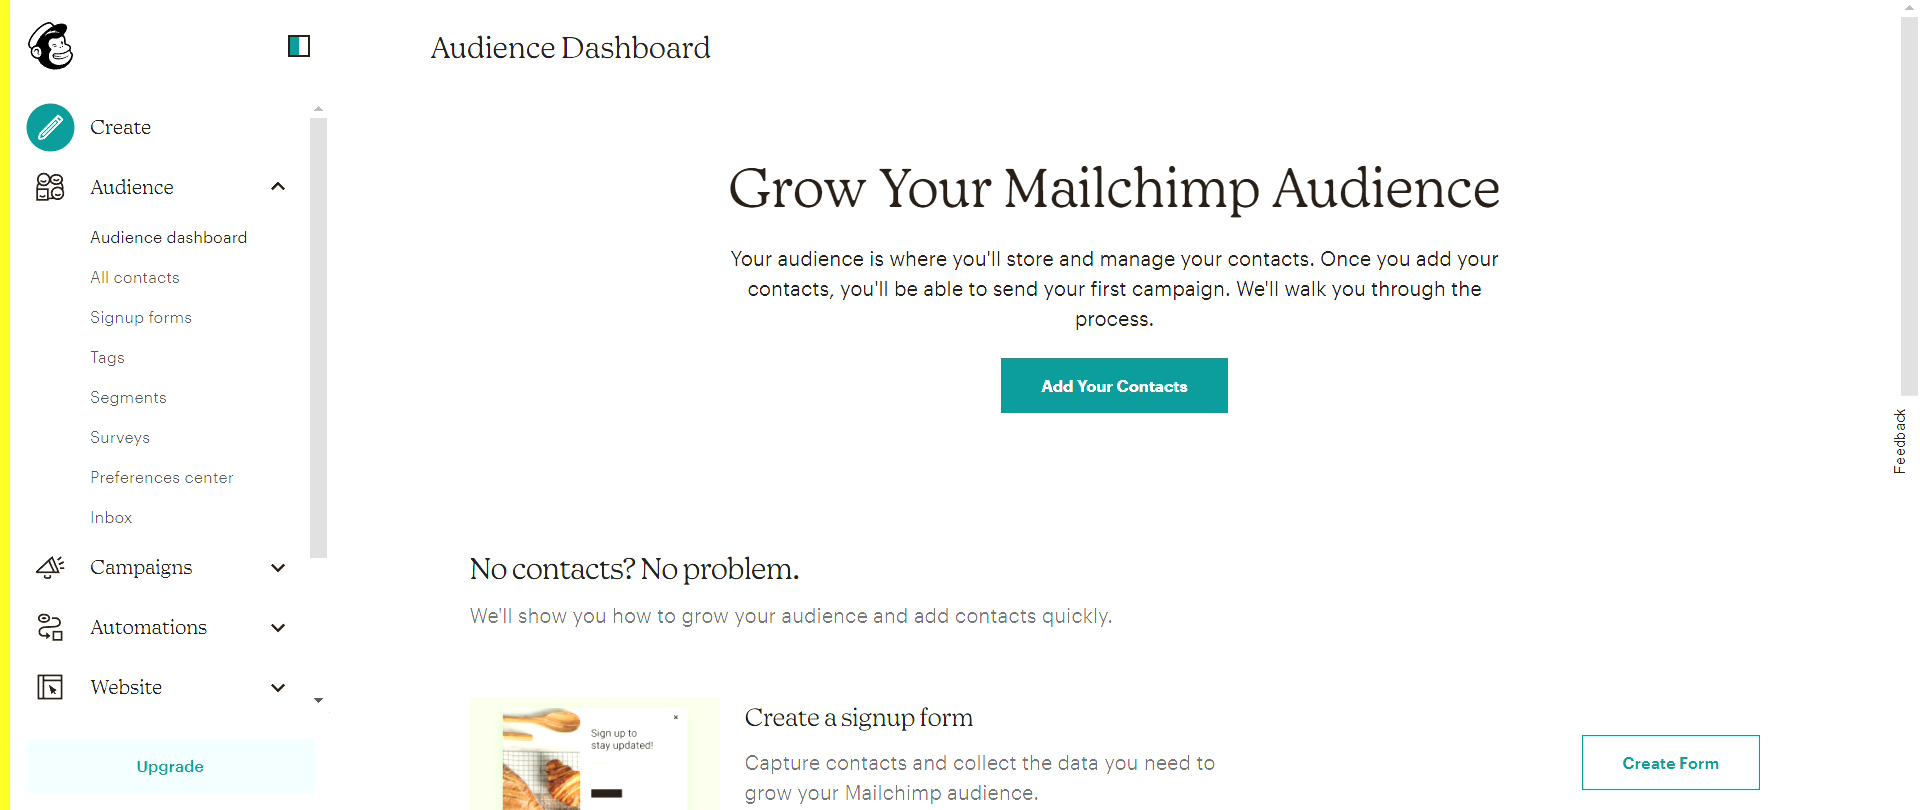 Come creare una lista contatti su MailChimp?